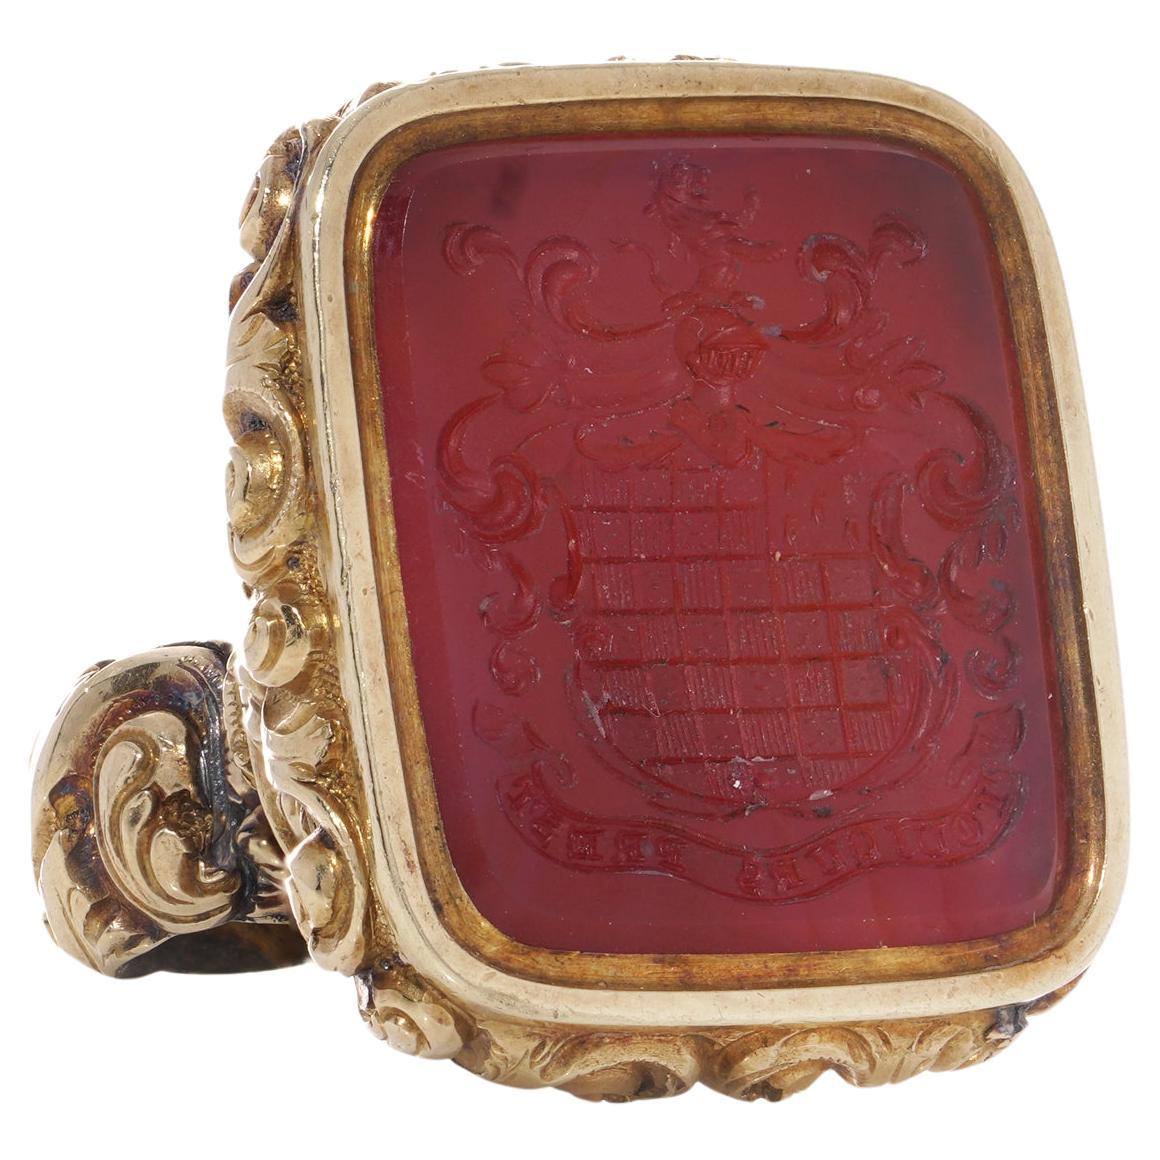 Viktorianischer Siegelbügel aus 15 Karat Gold mit Karneol-Intaglio und Familien motto, viktorianisch